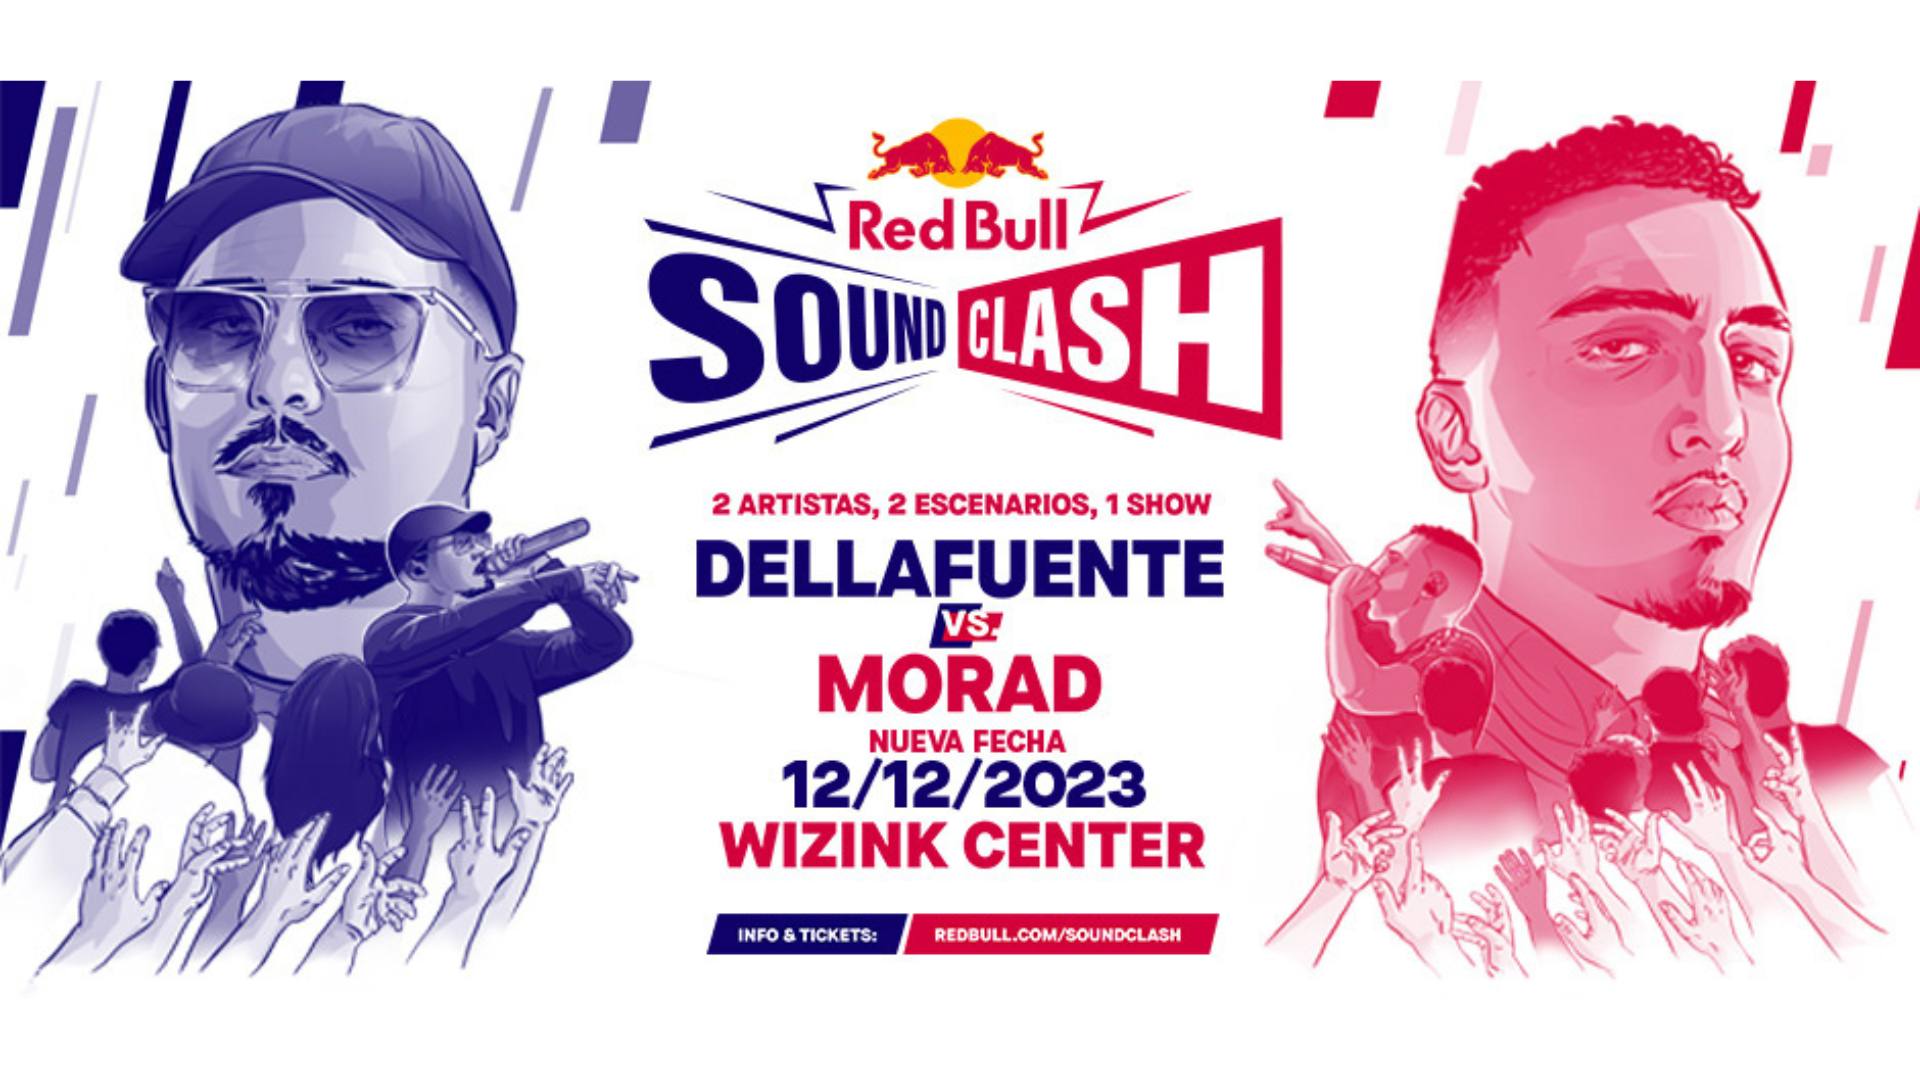 RedBull SoundClash hace sold out en menos de 24 horas y anuncia la segunda fecha de Dellafuente vs. Morad